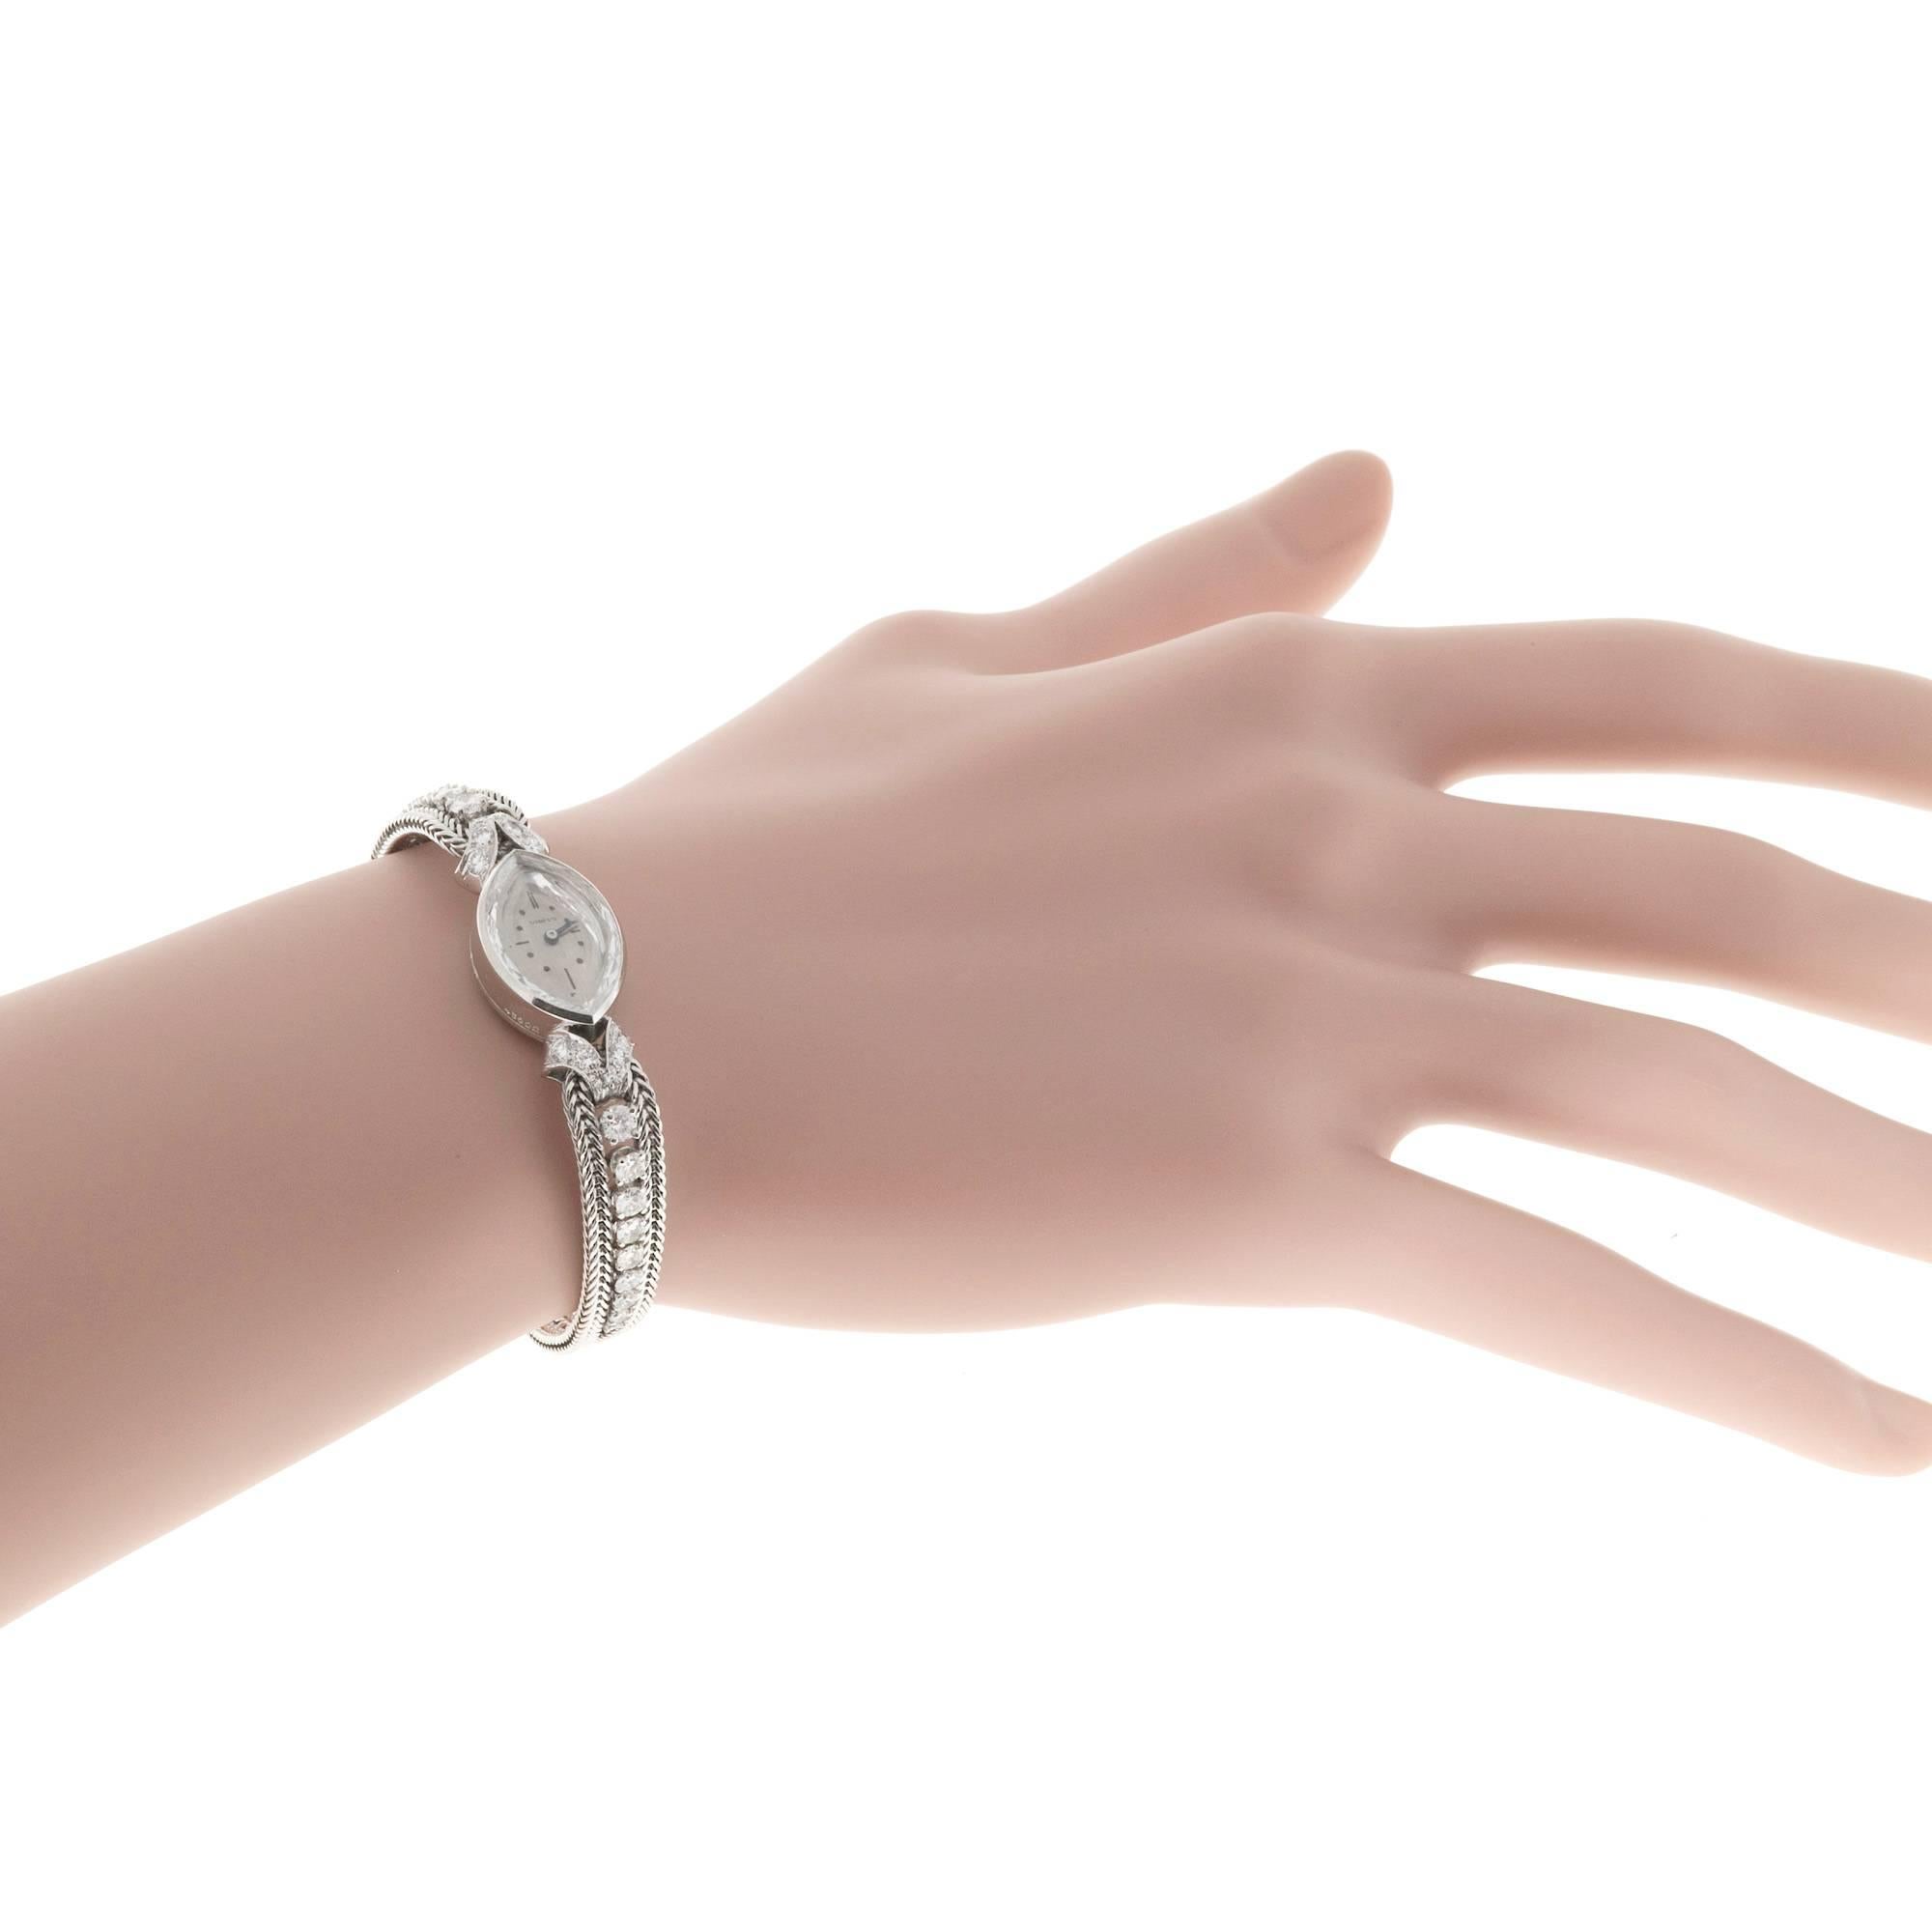 Tiffany & Co. Lady's Diamond Manual Wind Wristwatch 3